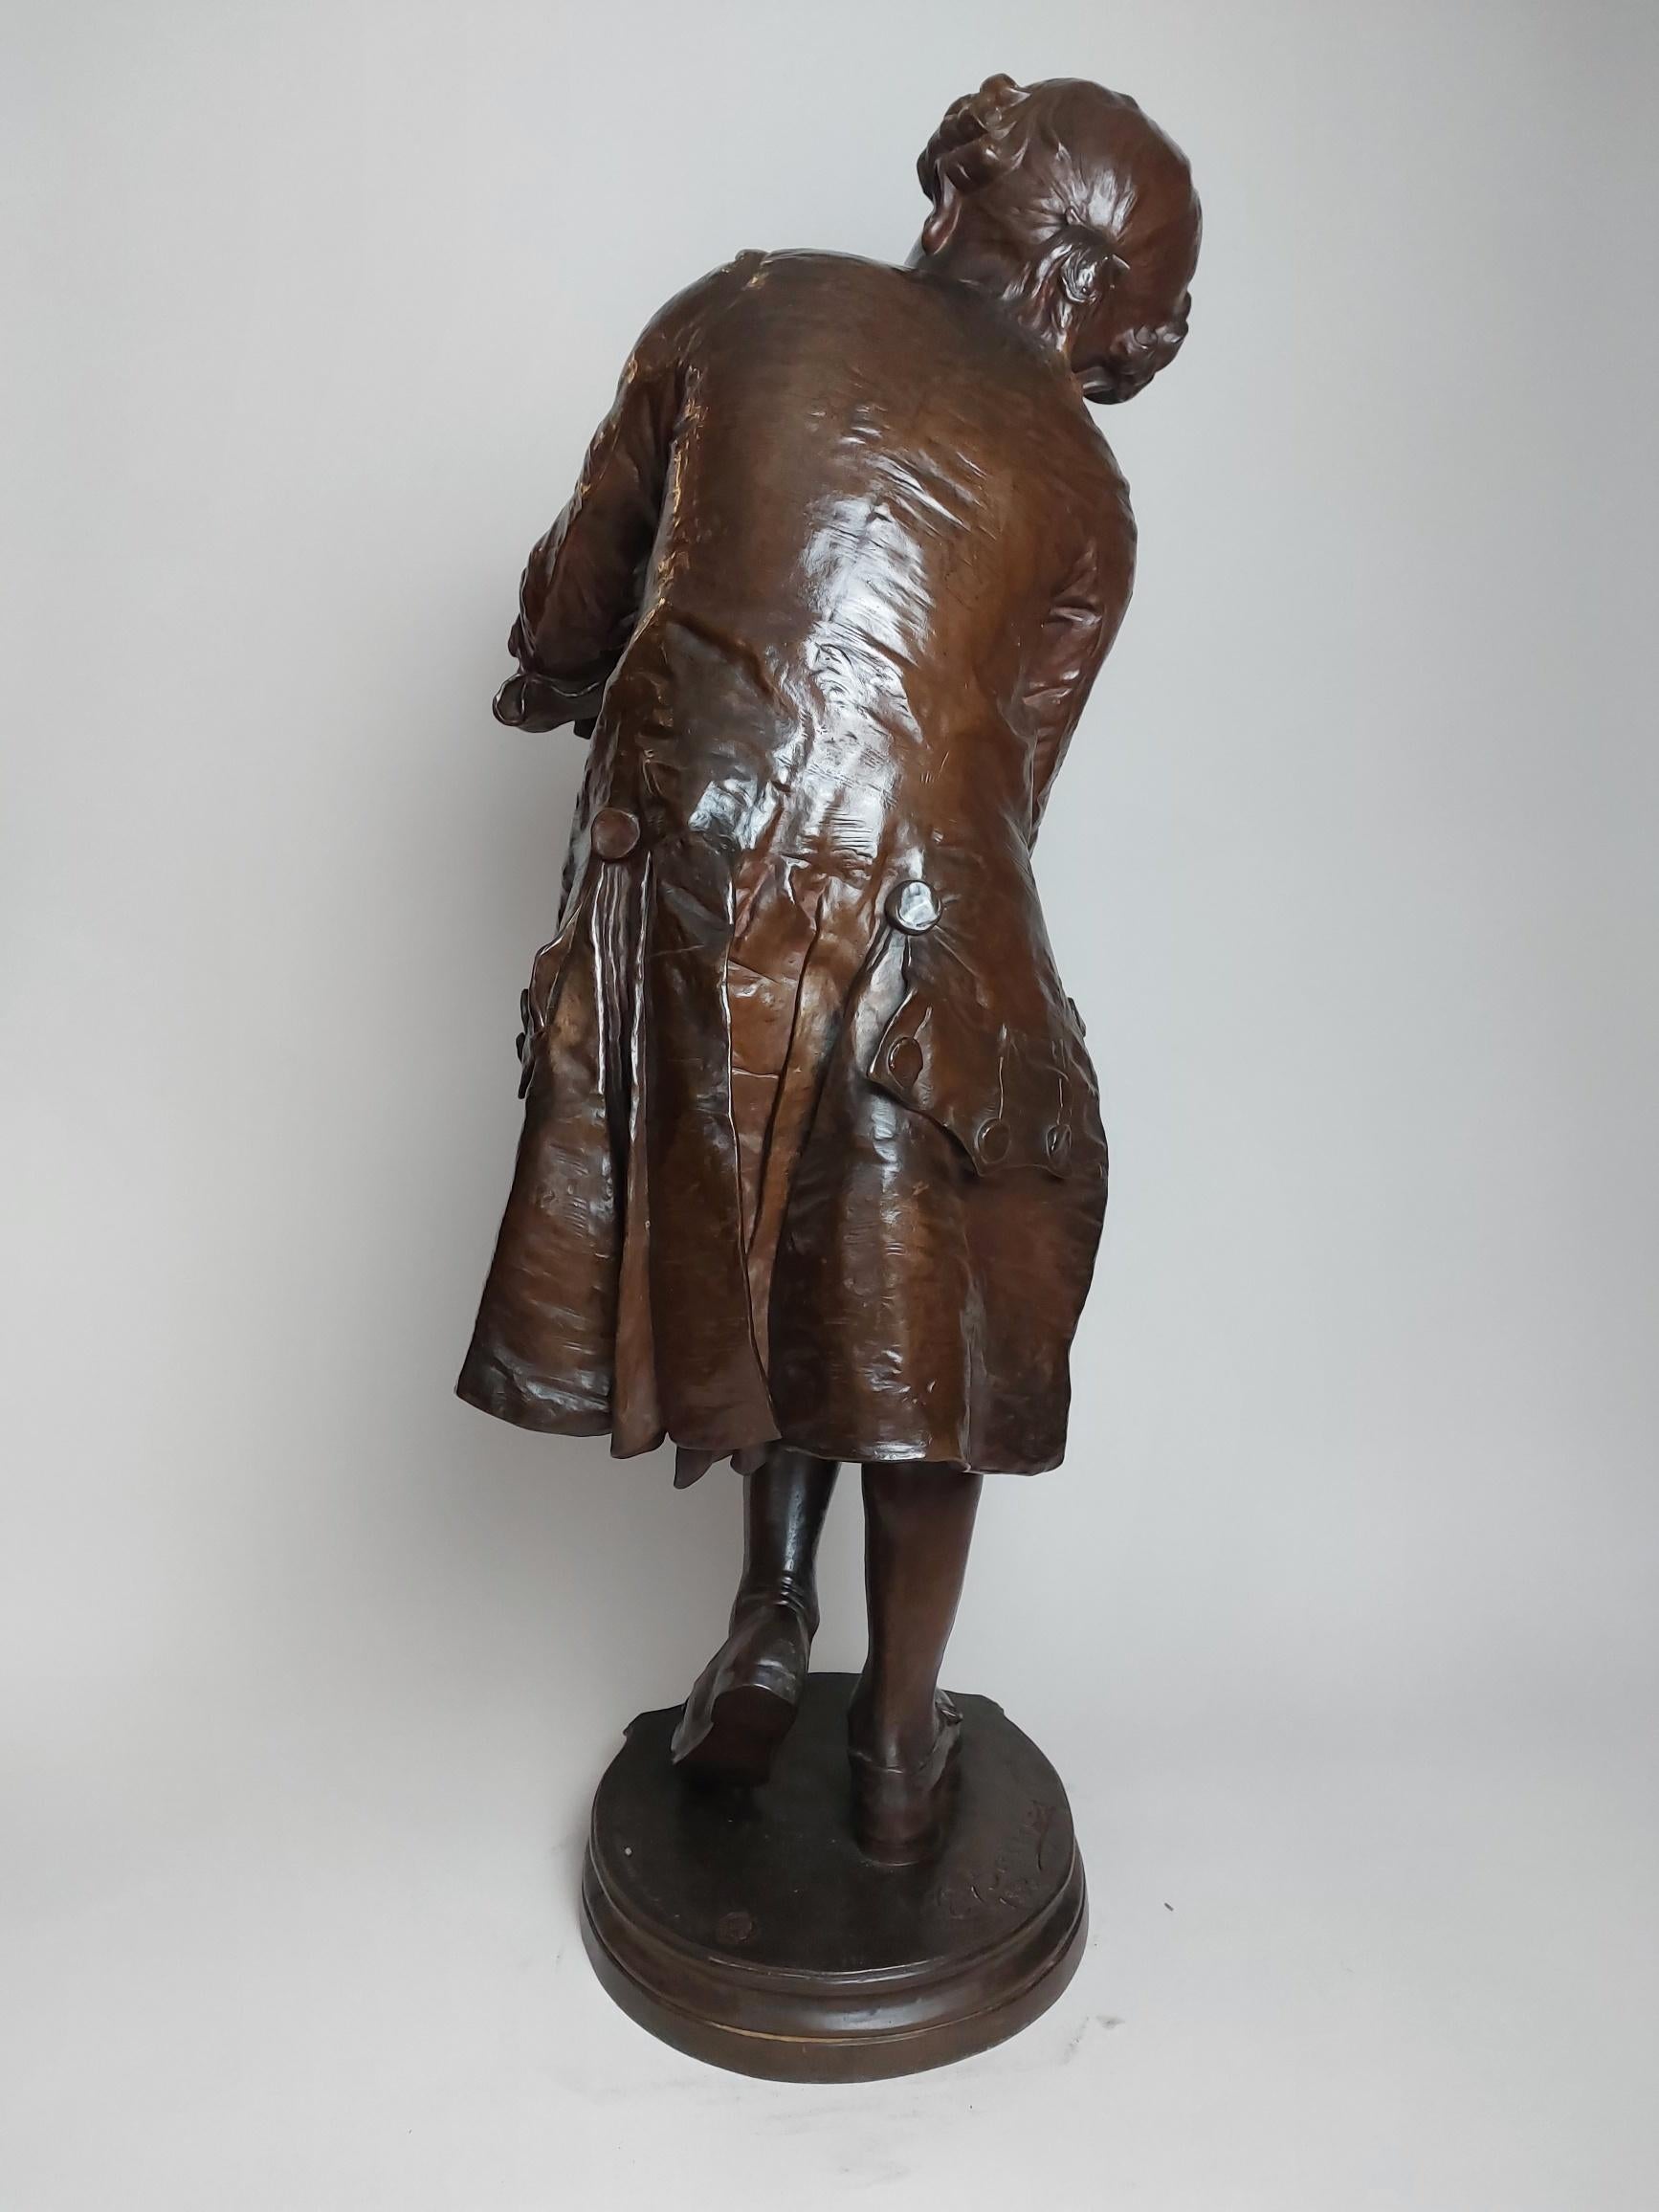 Eine charmante französische Bronze aus dem 19. Jahrhundert, die den jungen Mozart zeigt, wie er auf seinem Knie seine Geige stimmt.

Dies ist eine sehr beliebte Bronze mit vielen Versionen in verschiedenen Größen gegossen, ist dies besonders gut